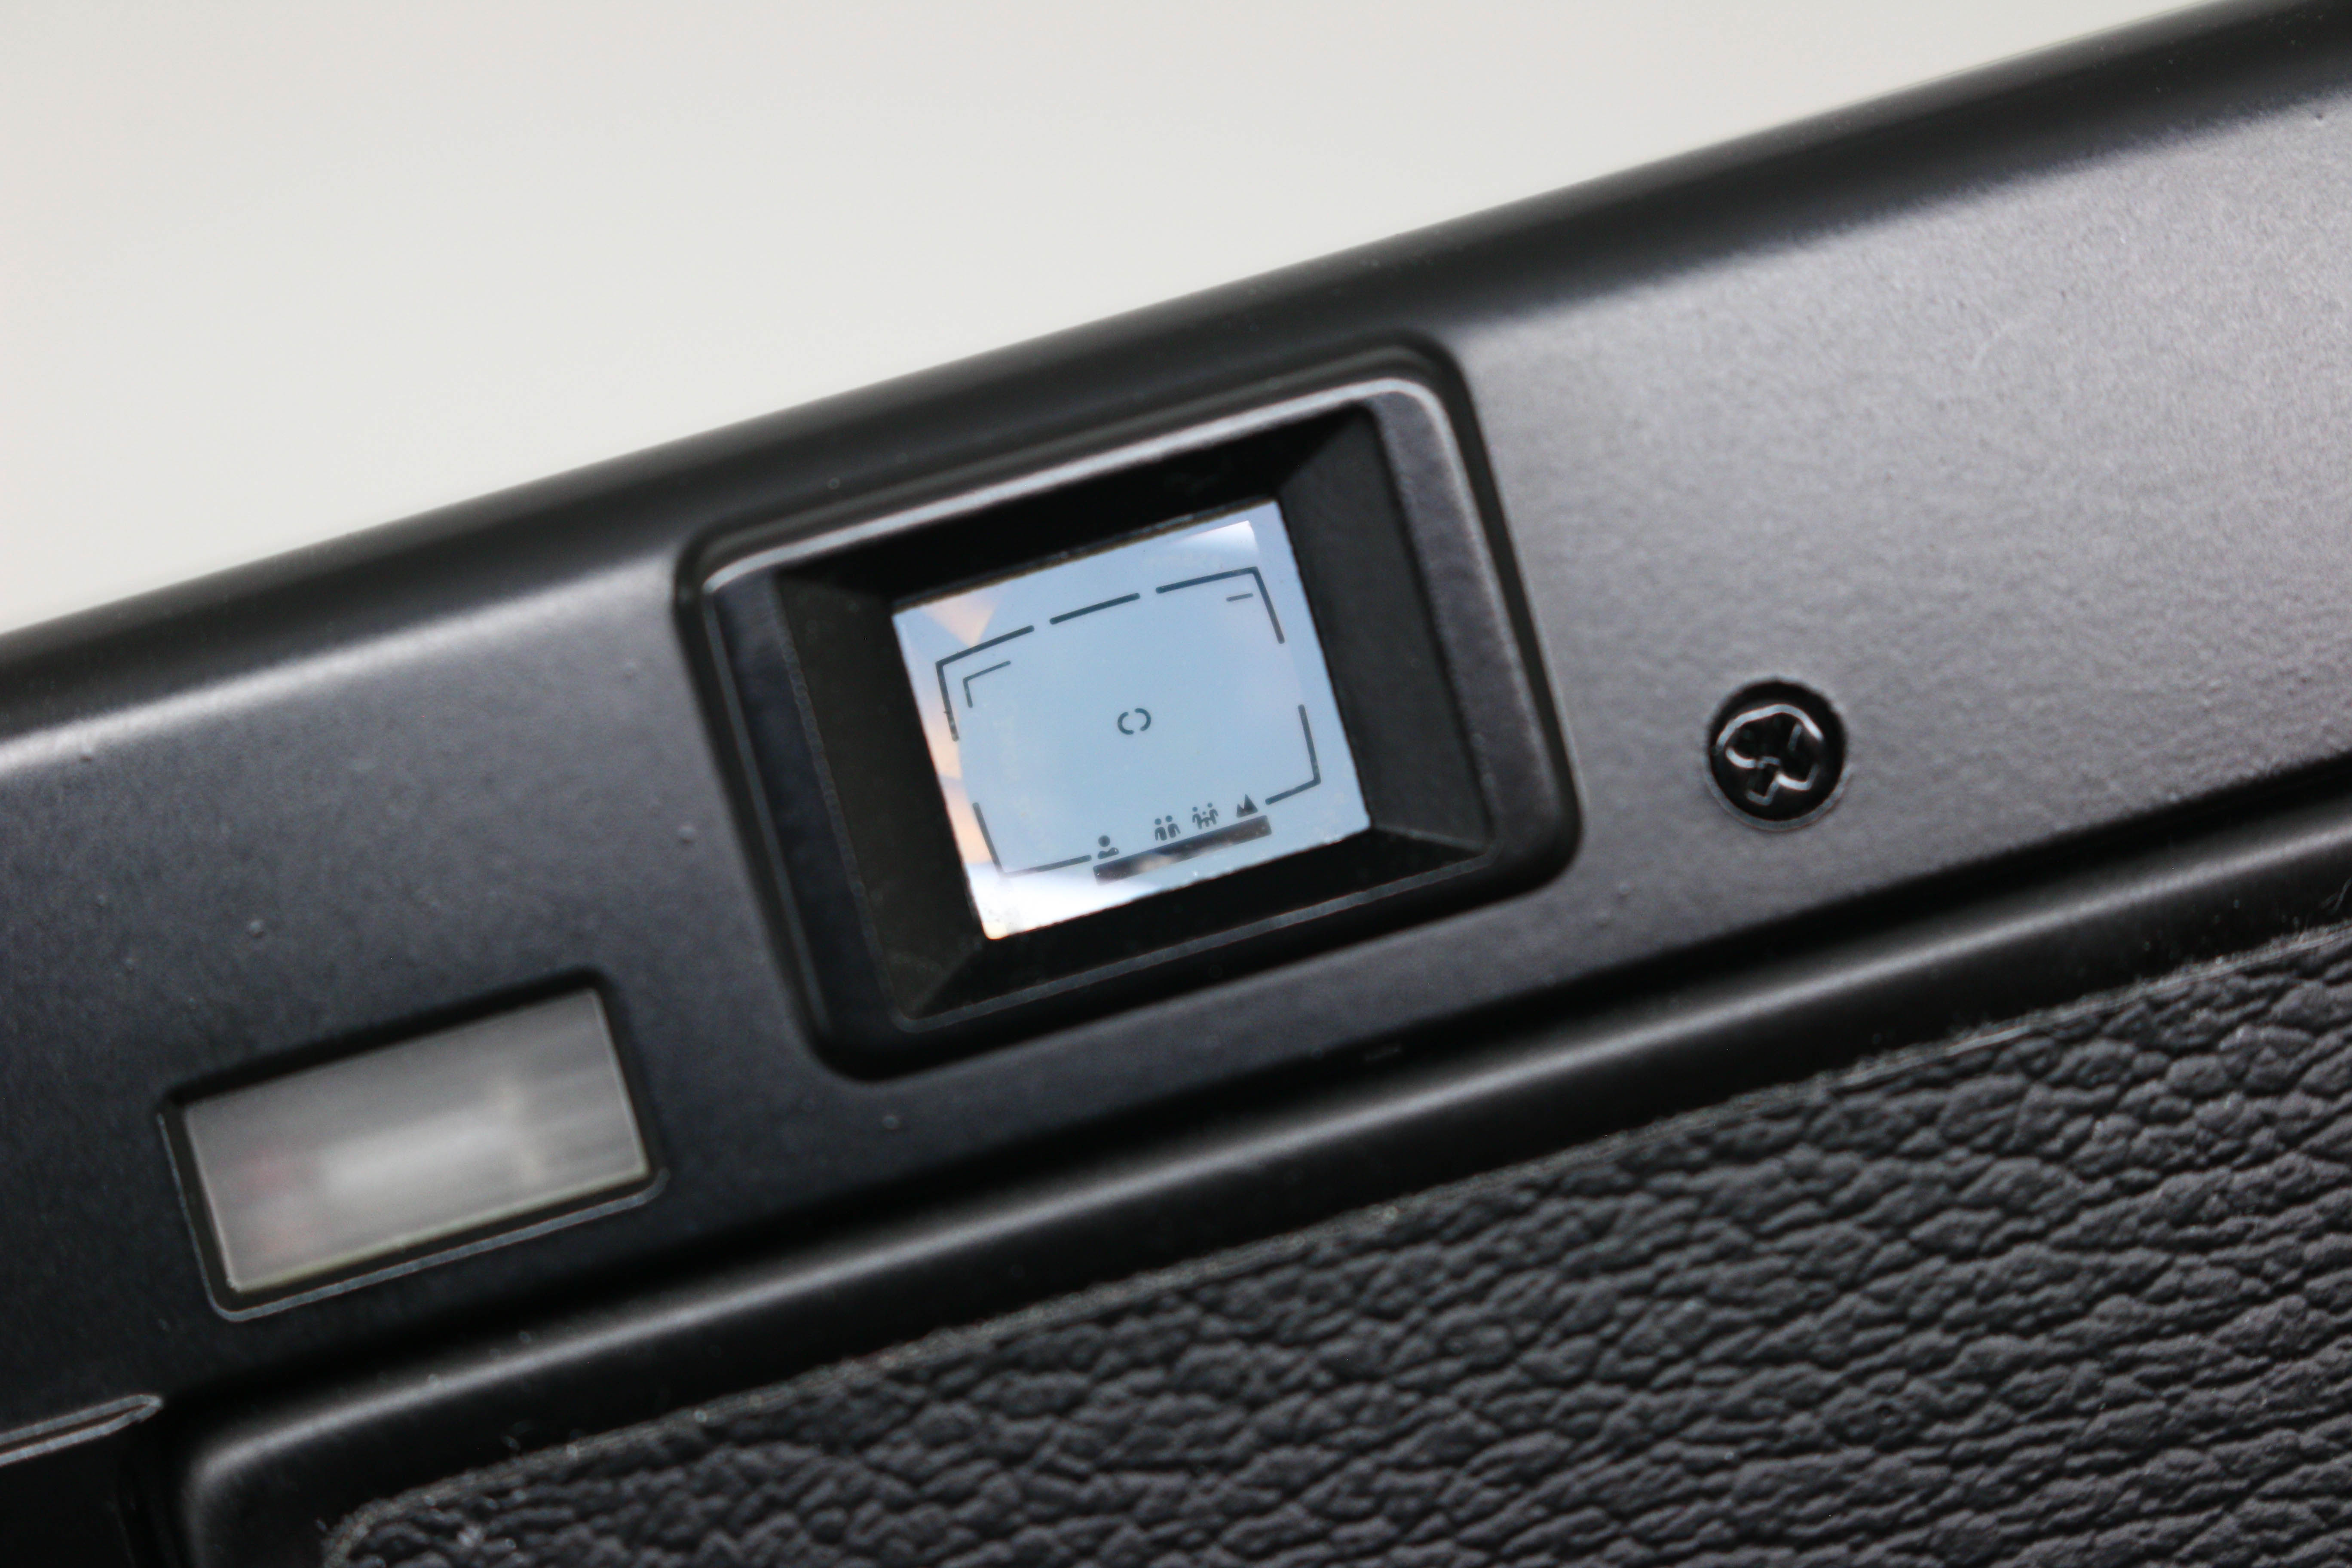 Nikon L35AF (1000 ASA) Cased Collectors Set